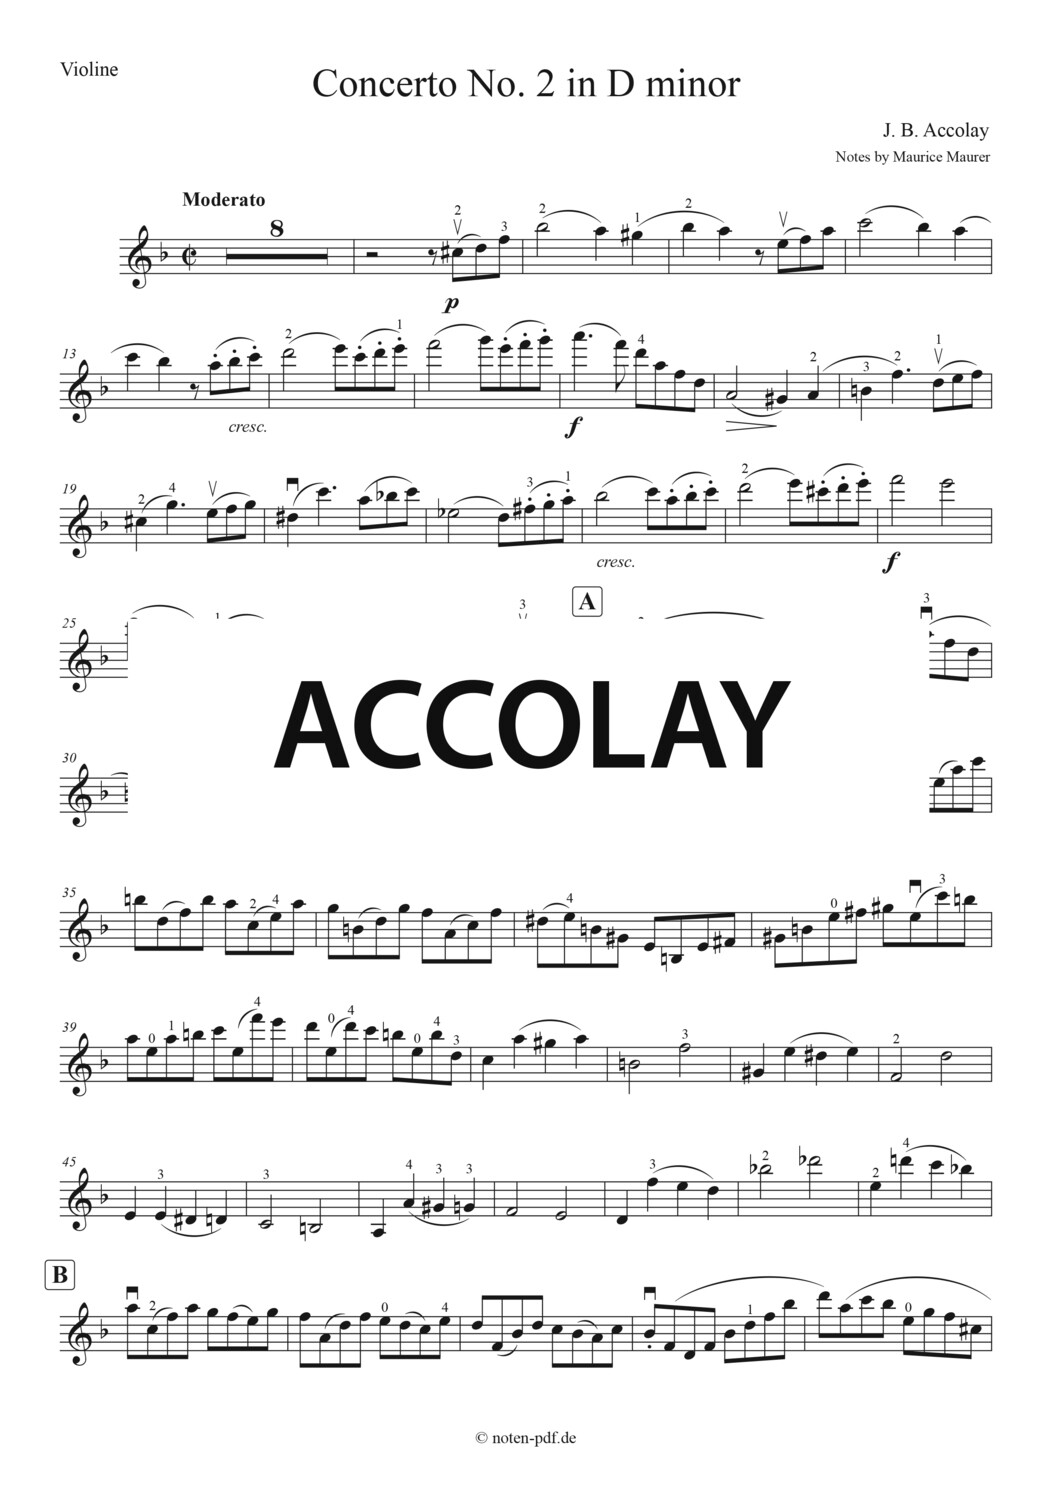 Accolay: Concerto No. 2 in D minor